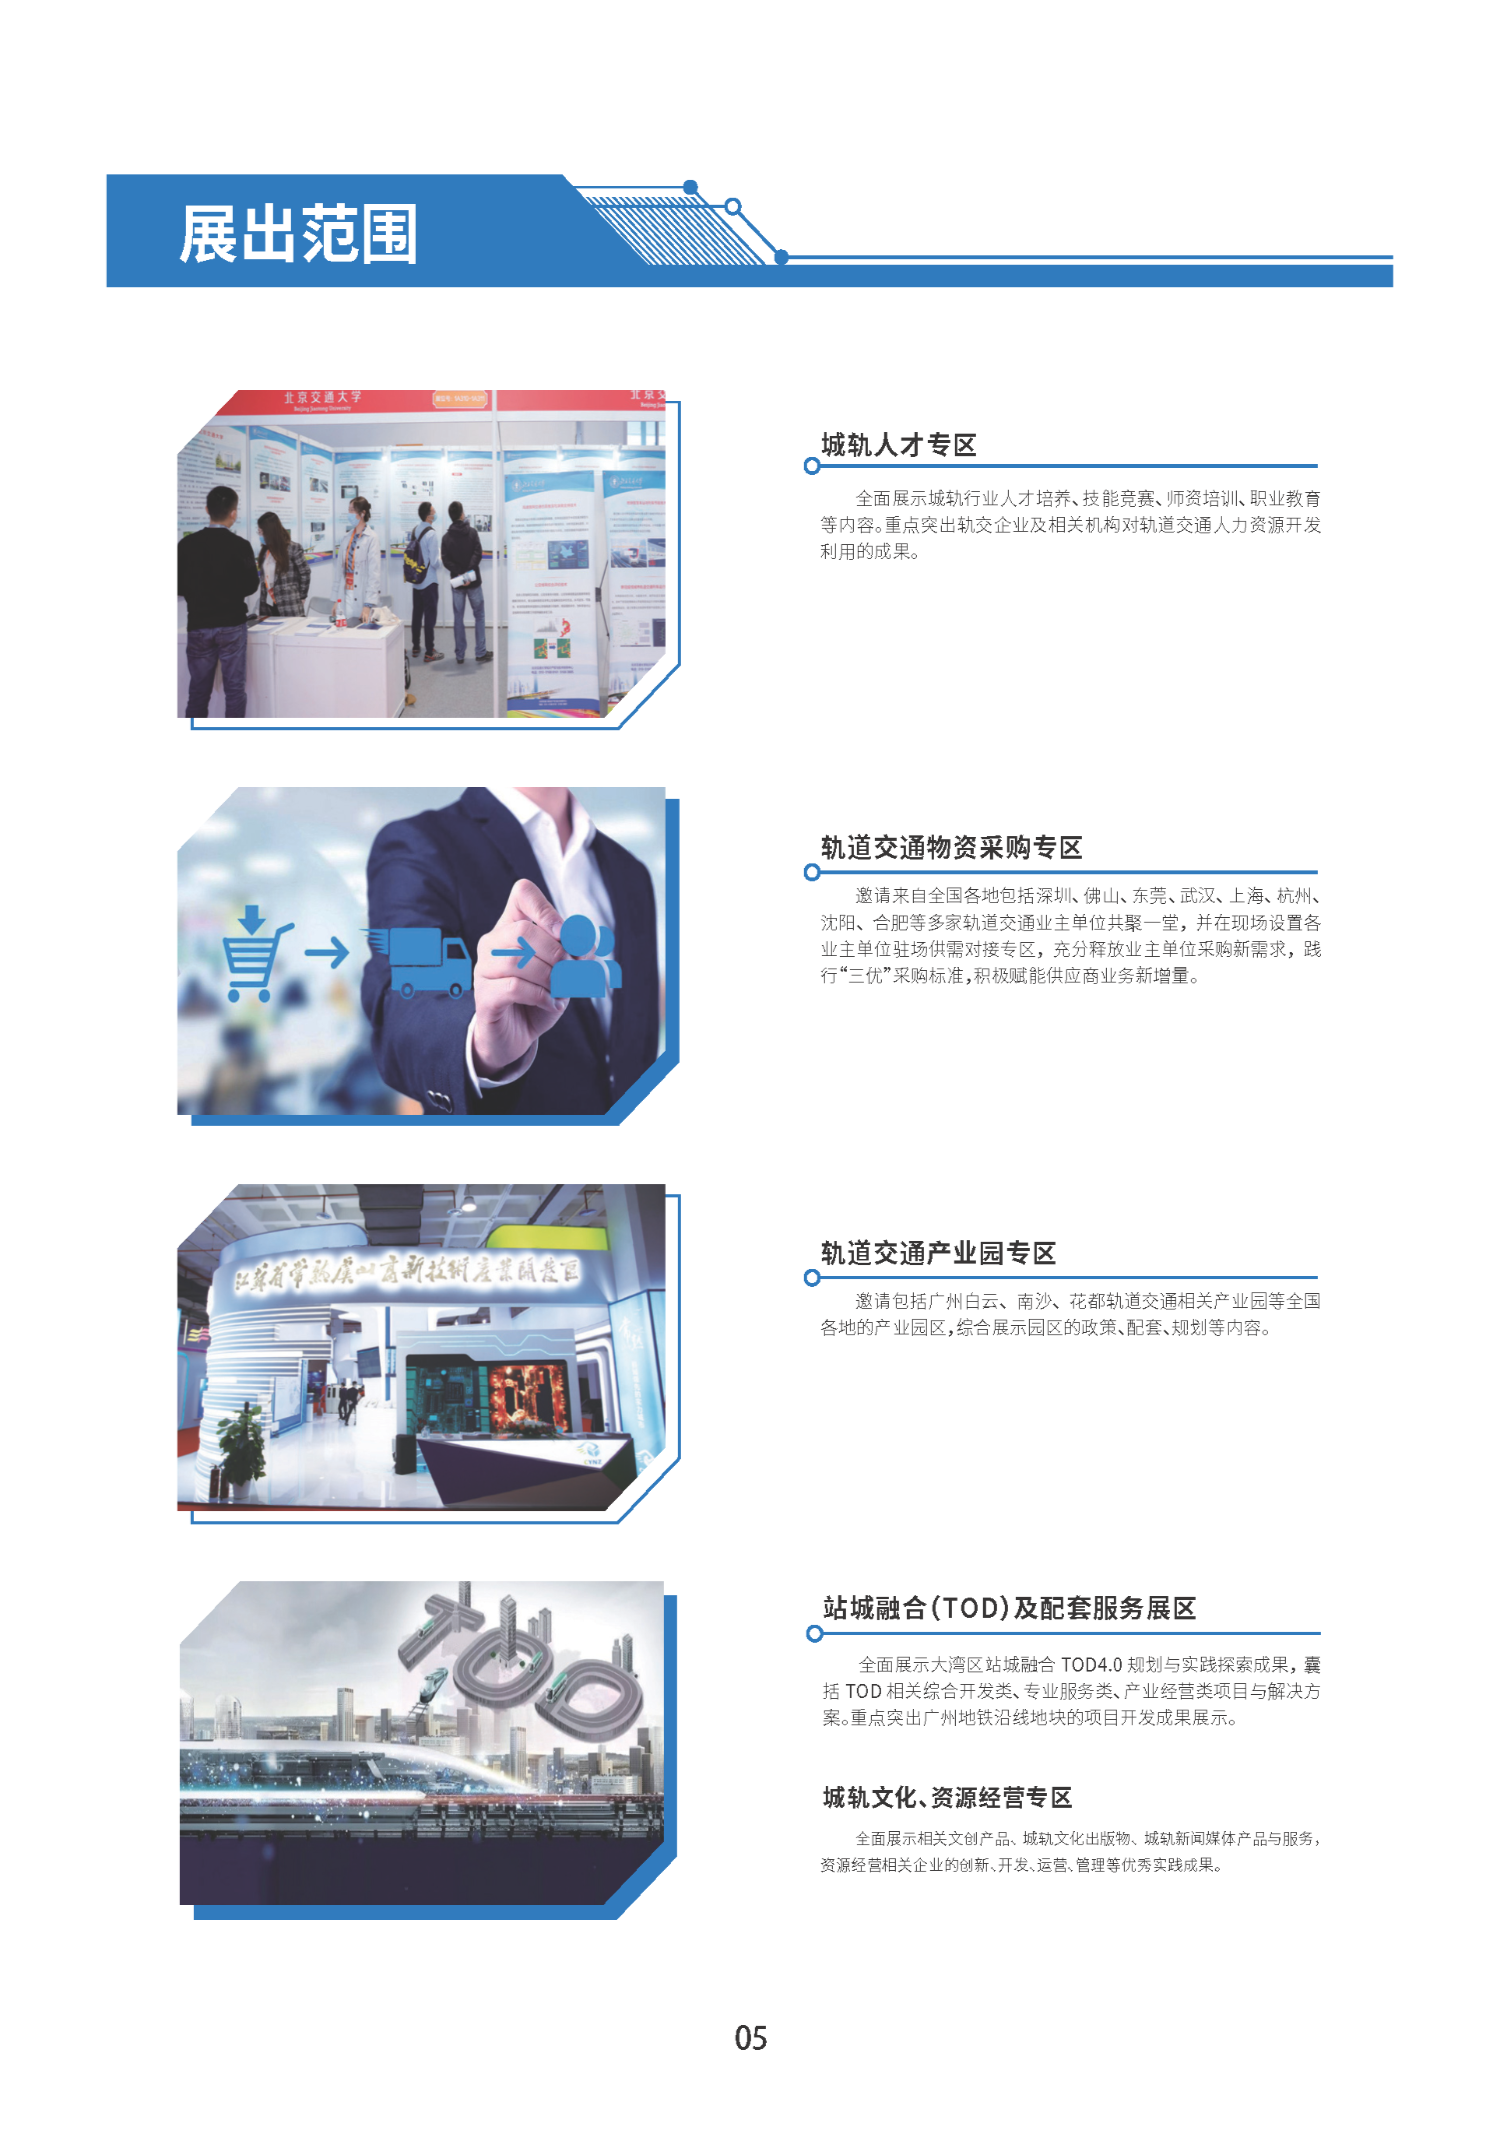 首届广州国际轨道交通展招商手册-0909_页面_08.png